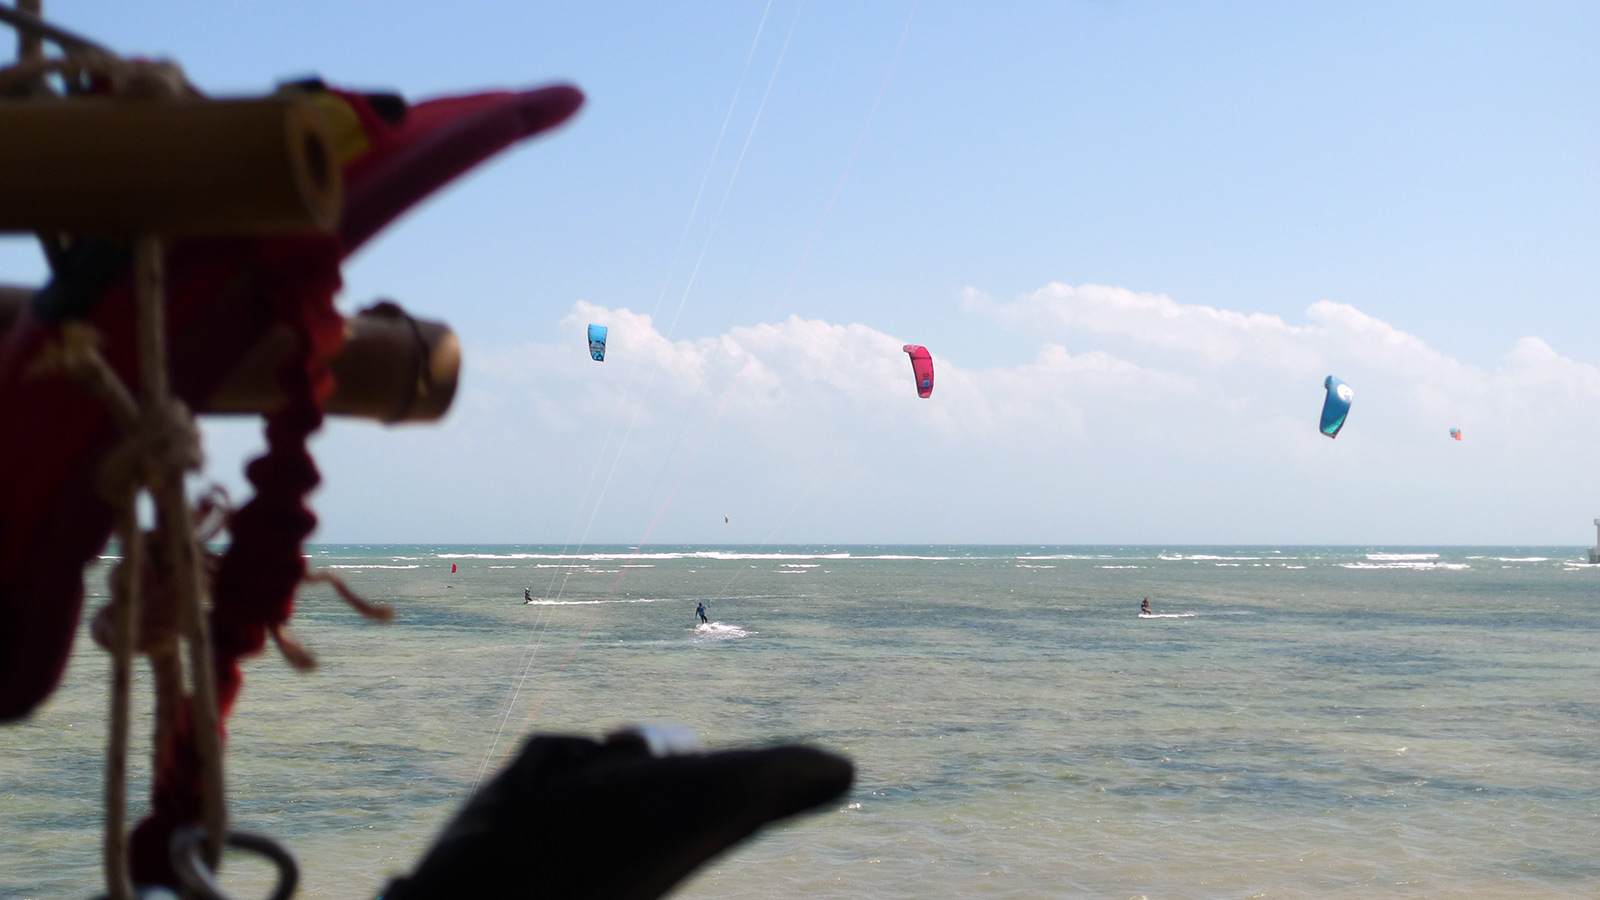 Min Hoa lagun kitesurfing i Phan Rang, Vietnam,